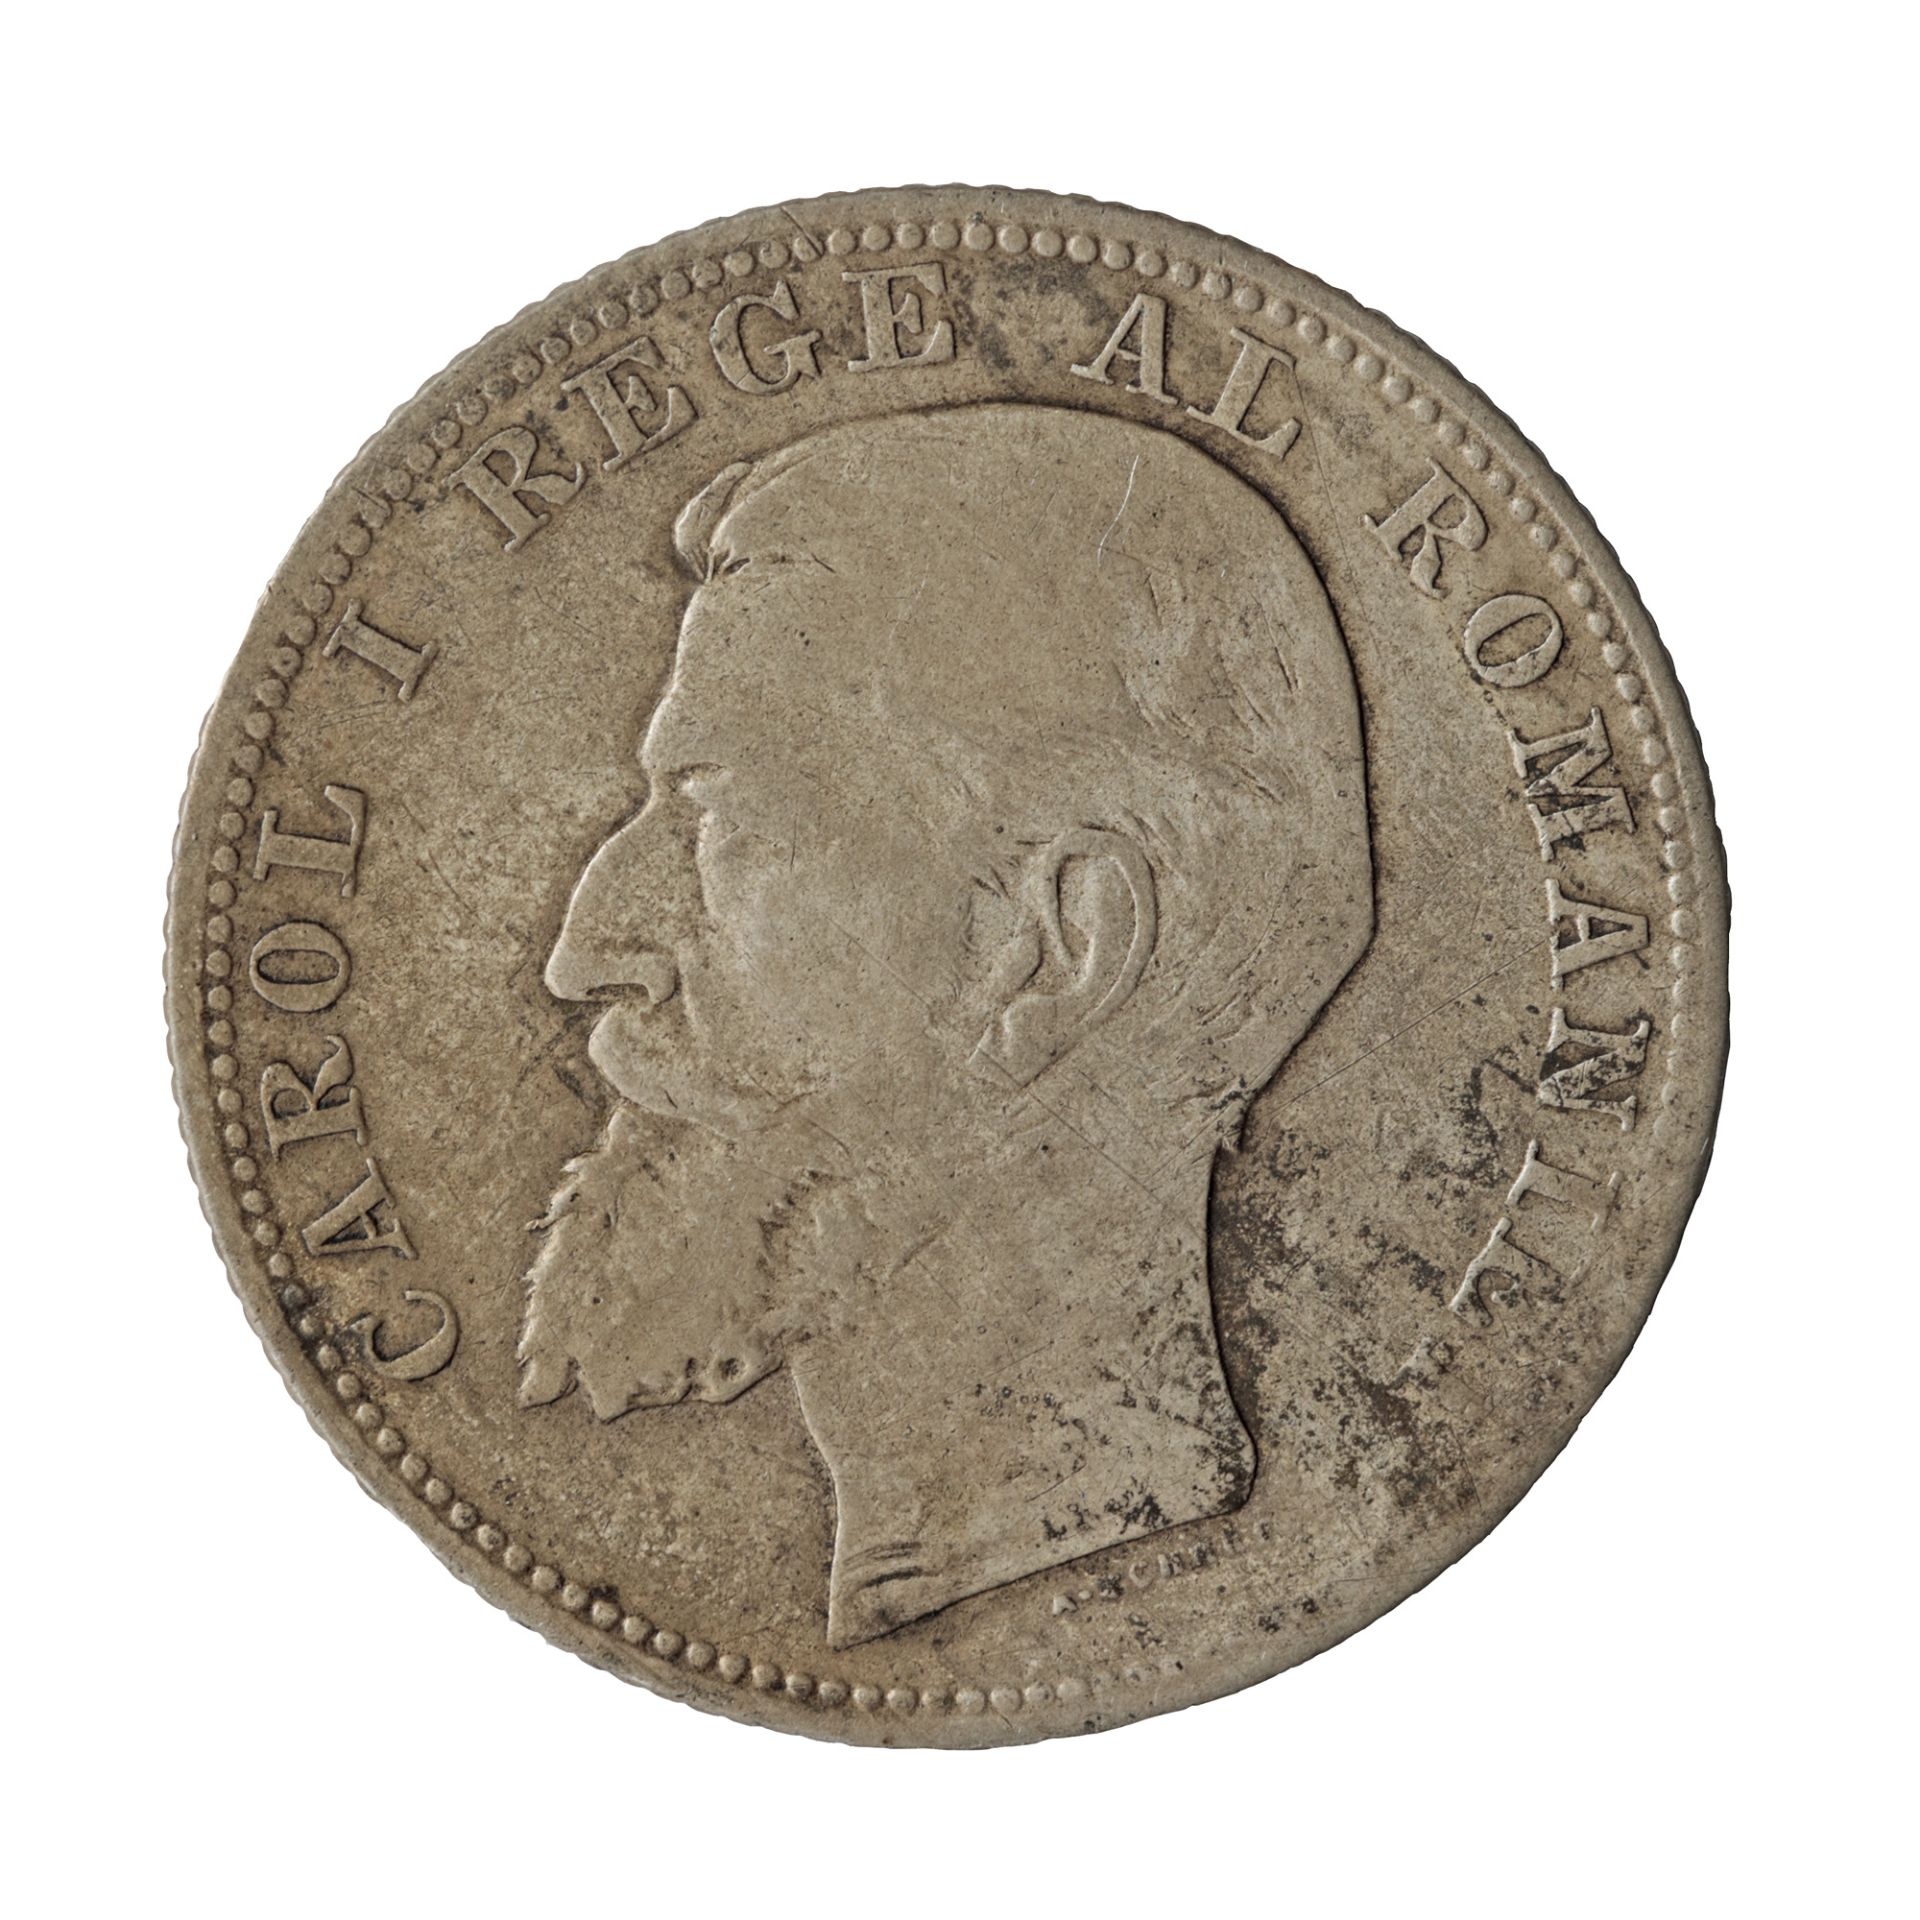 Monedă 2 Lei 1901, argint, cea ma rară monedă româneasca de circulație, cu un tiraj de doar 12.476 exemplare